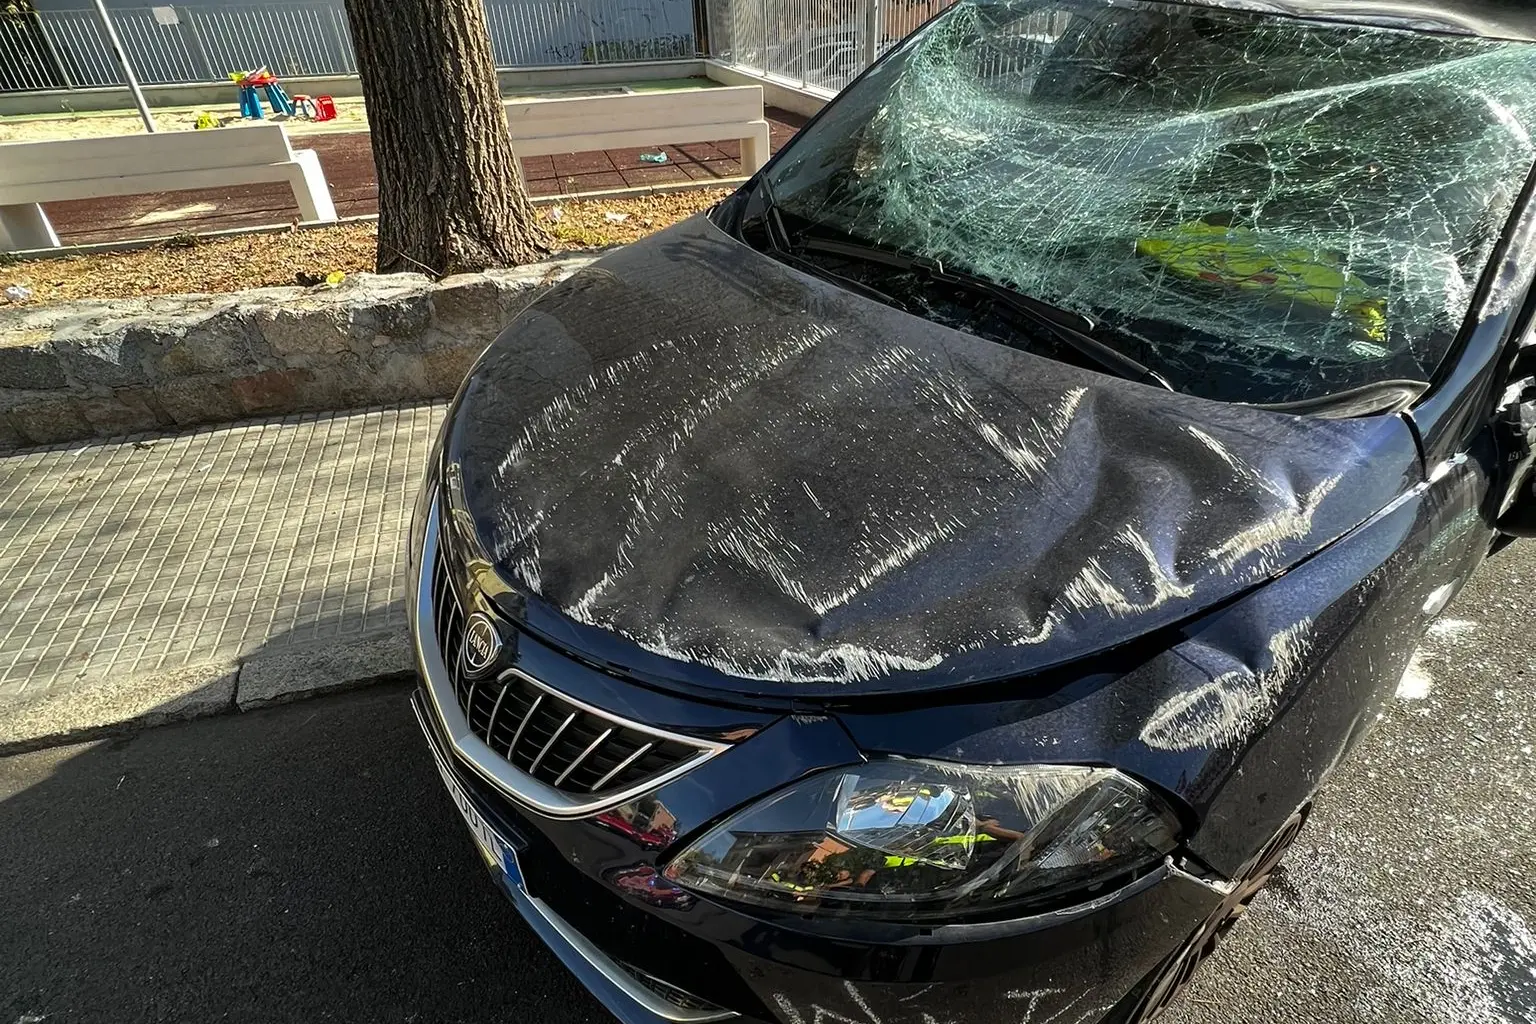 L'auto dopo l'incidente (foto Ledda)